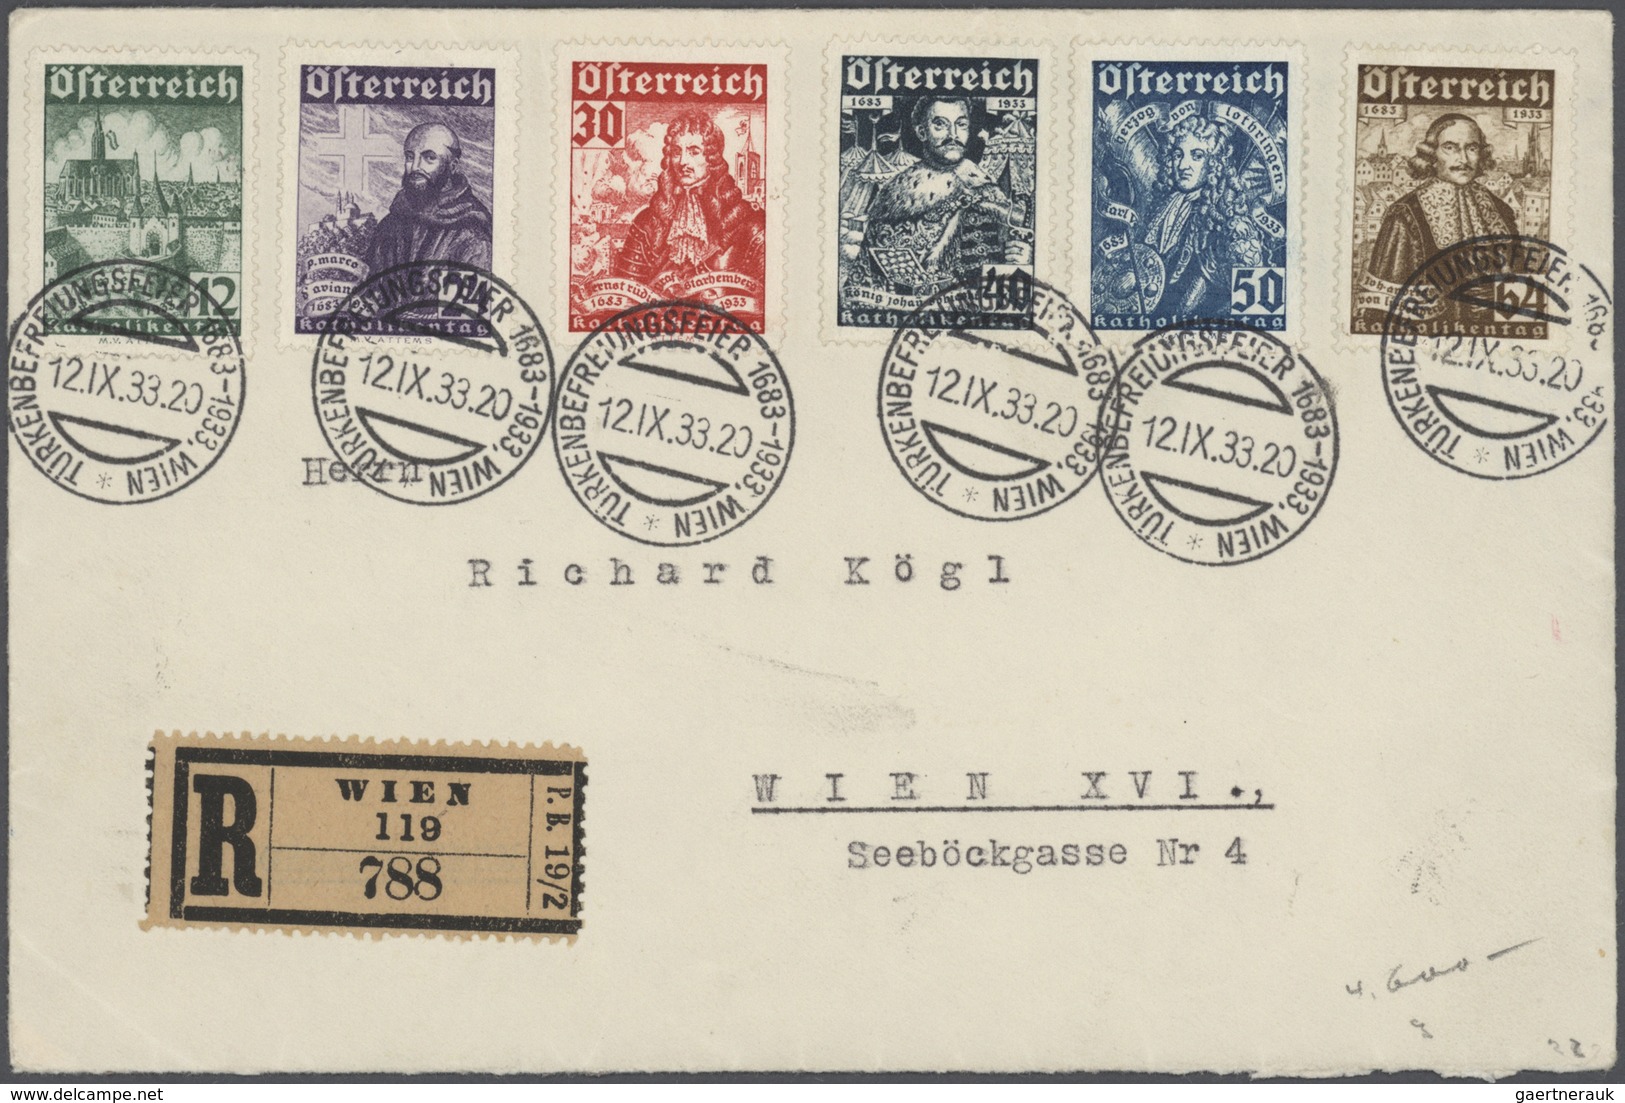 Österreich: 1850/1983, saubere Sammlung auf Albenblättern streckenweise komplett geführt, ab einem g